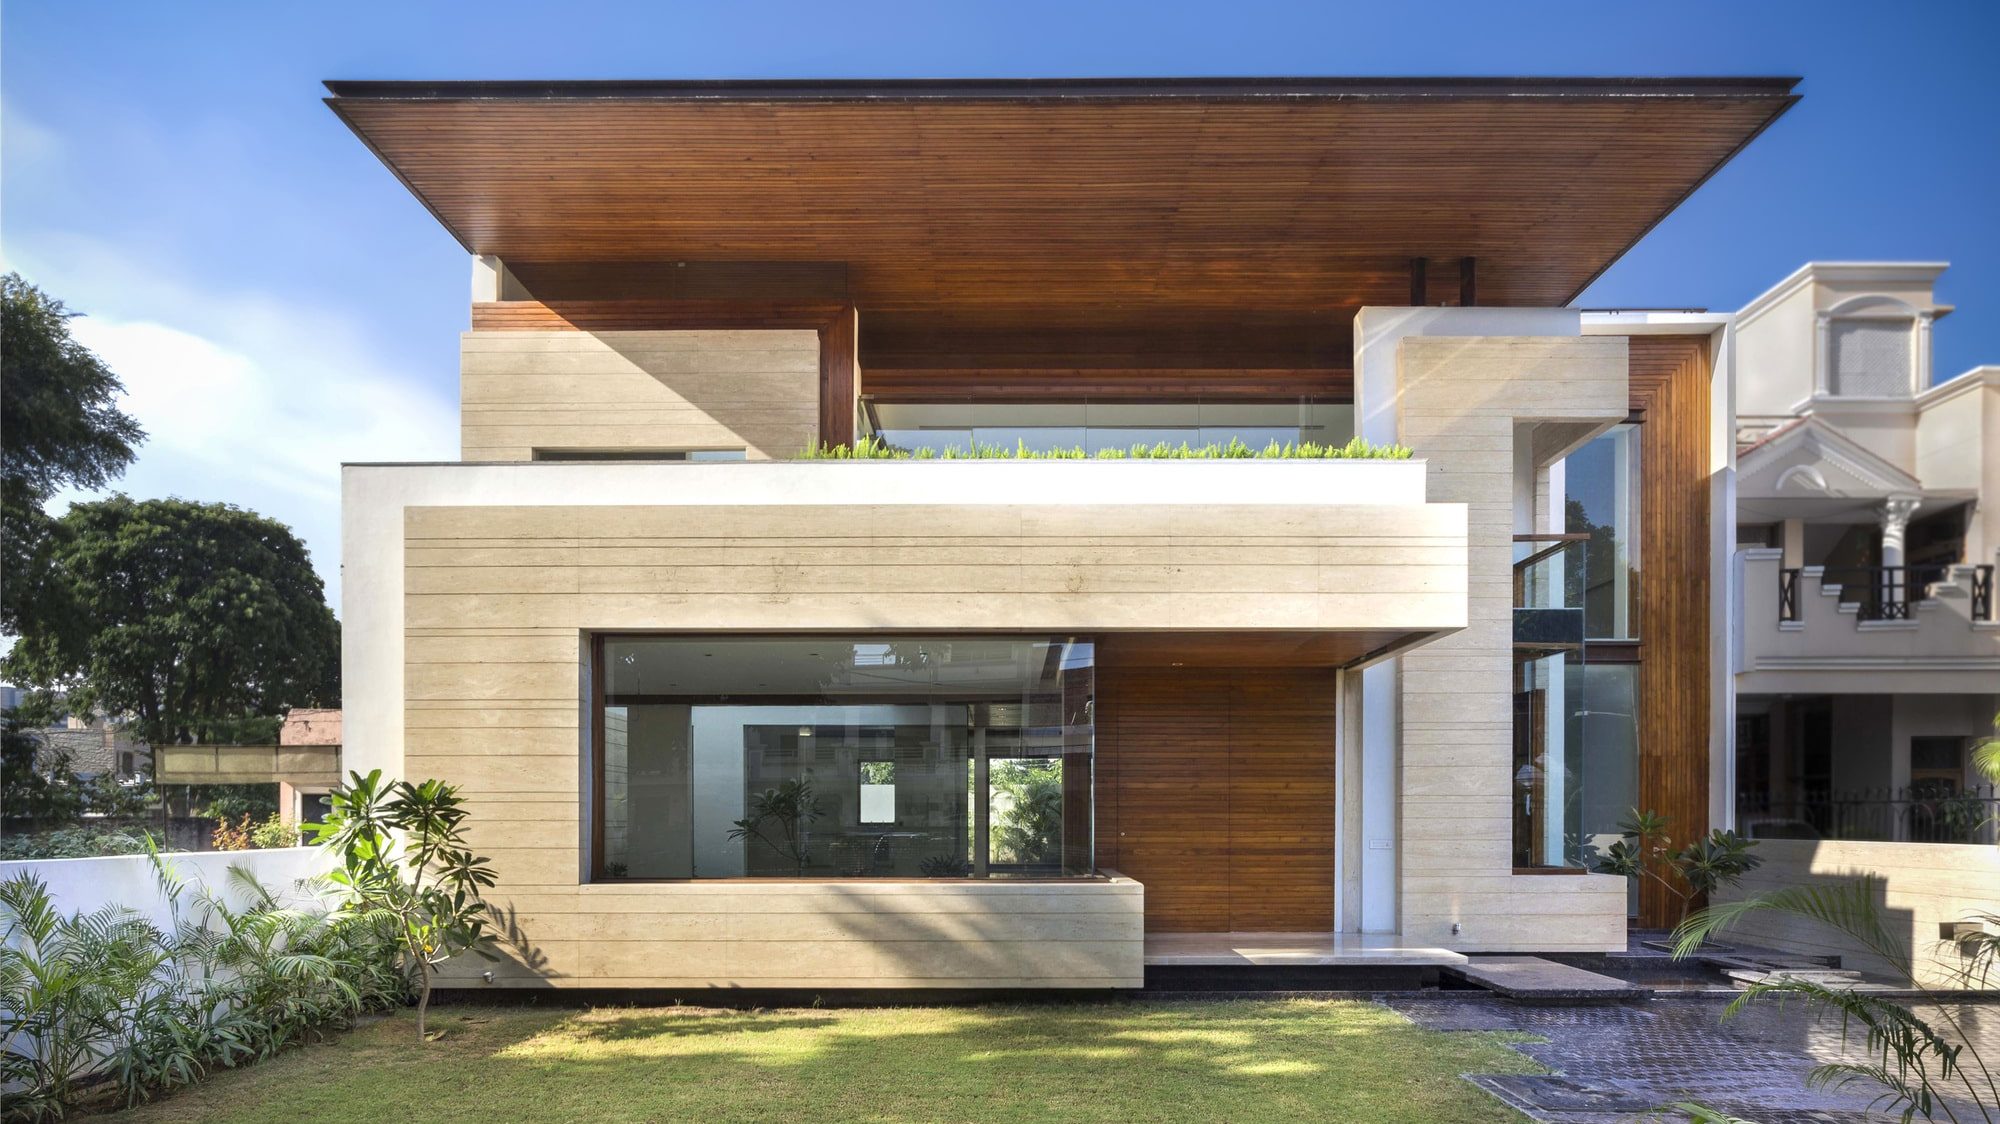 Casa con plafón volado de madera. Impactantes fachadas modernas